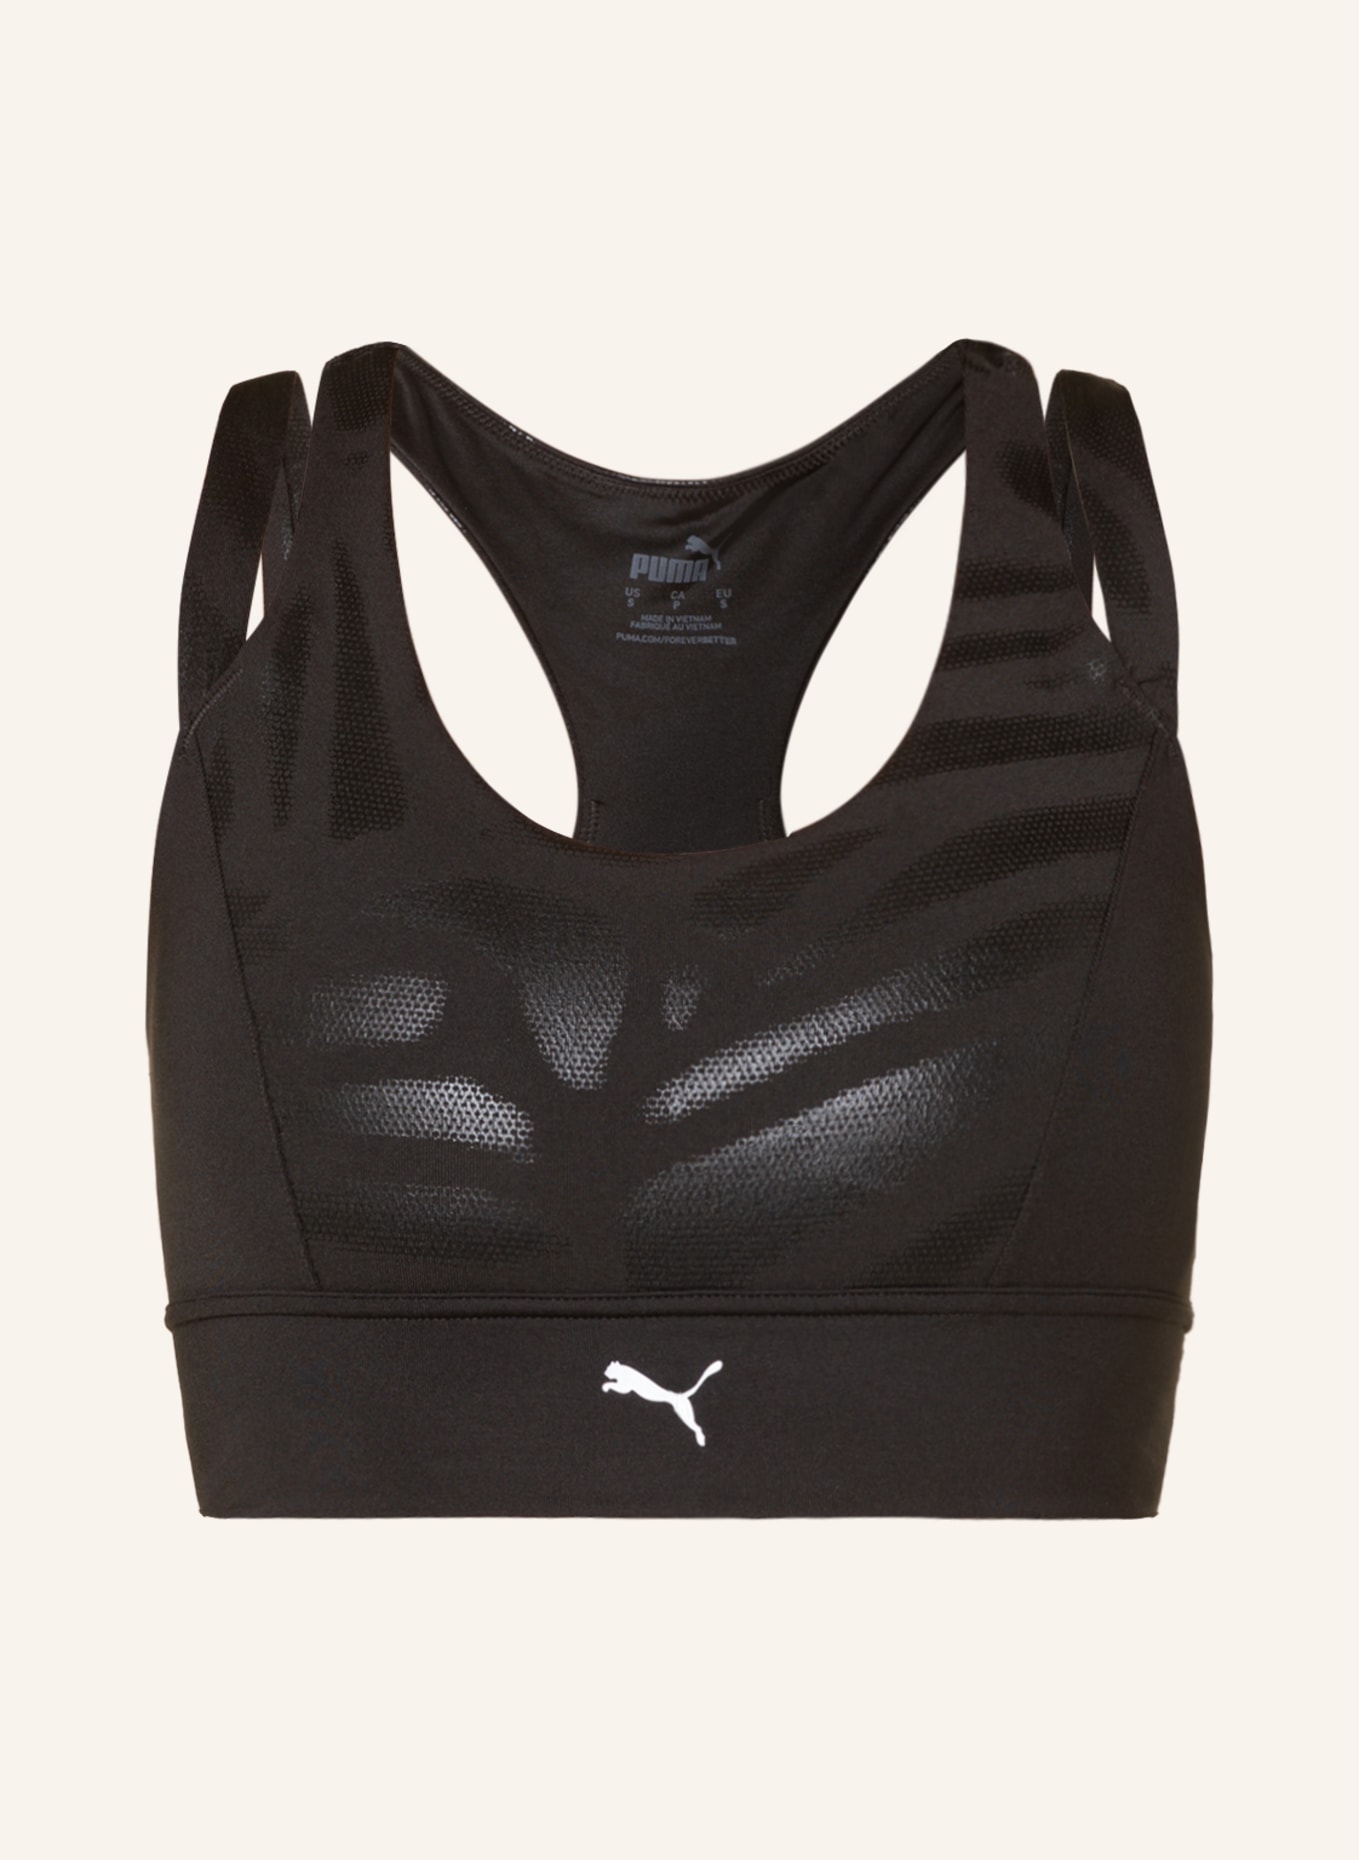 PUMA Sports bra NOVA SHINE EVERSCULPT in black